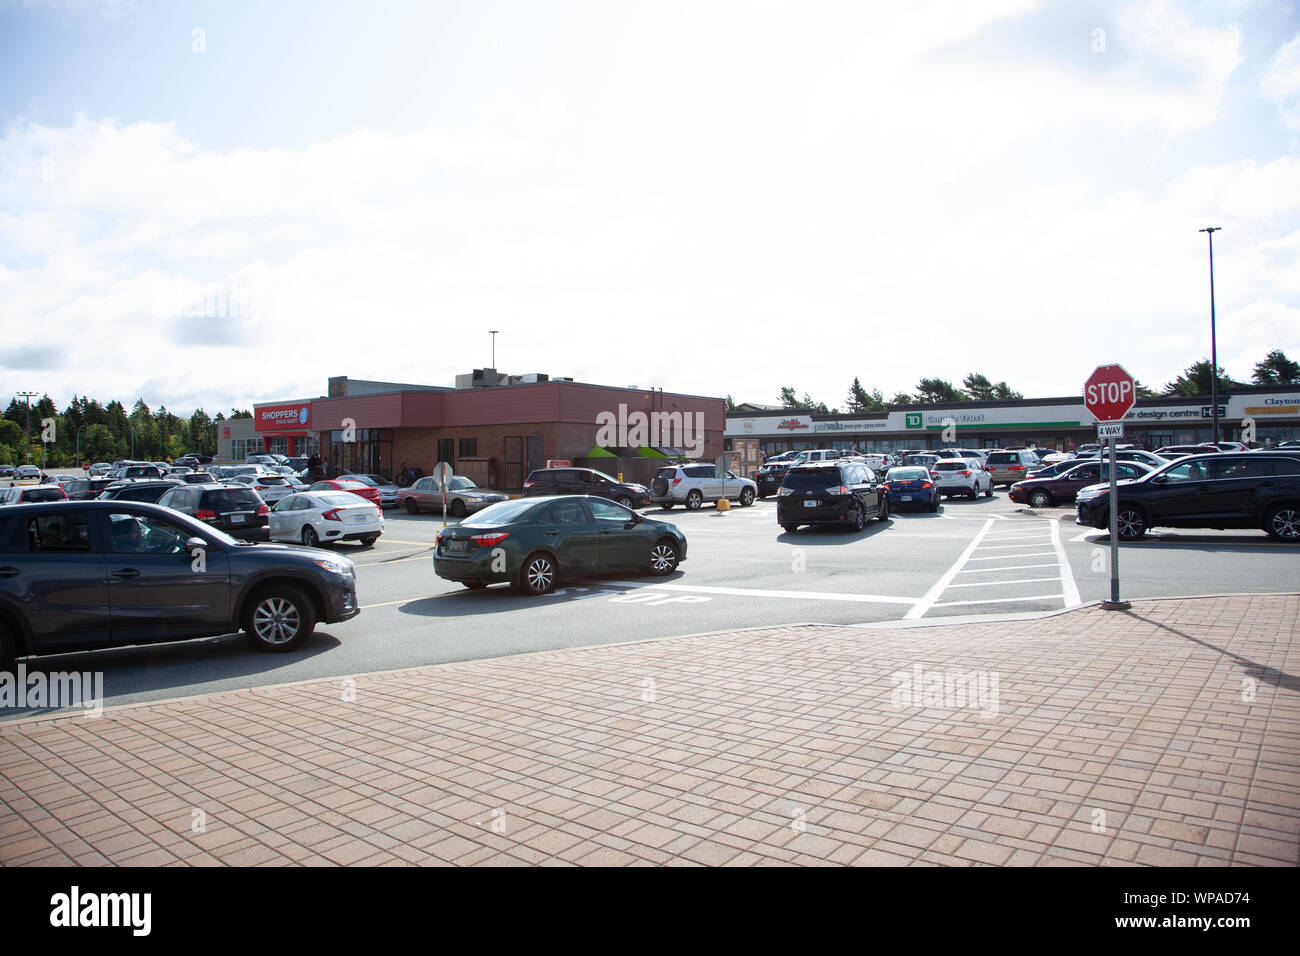 8 septembre 2019 - Halifax, Nouvelle-Écosse - paniers-parking à Clayton Park essaie d'attendre pour obtenir à Tim Hortons après l'Ouragan Dorian Banque D'Images